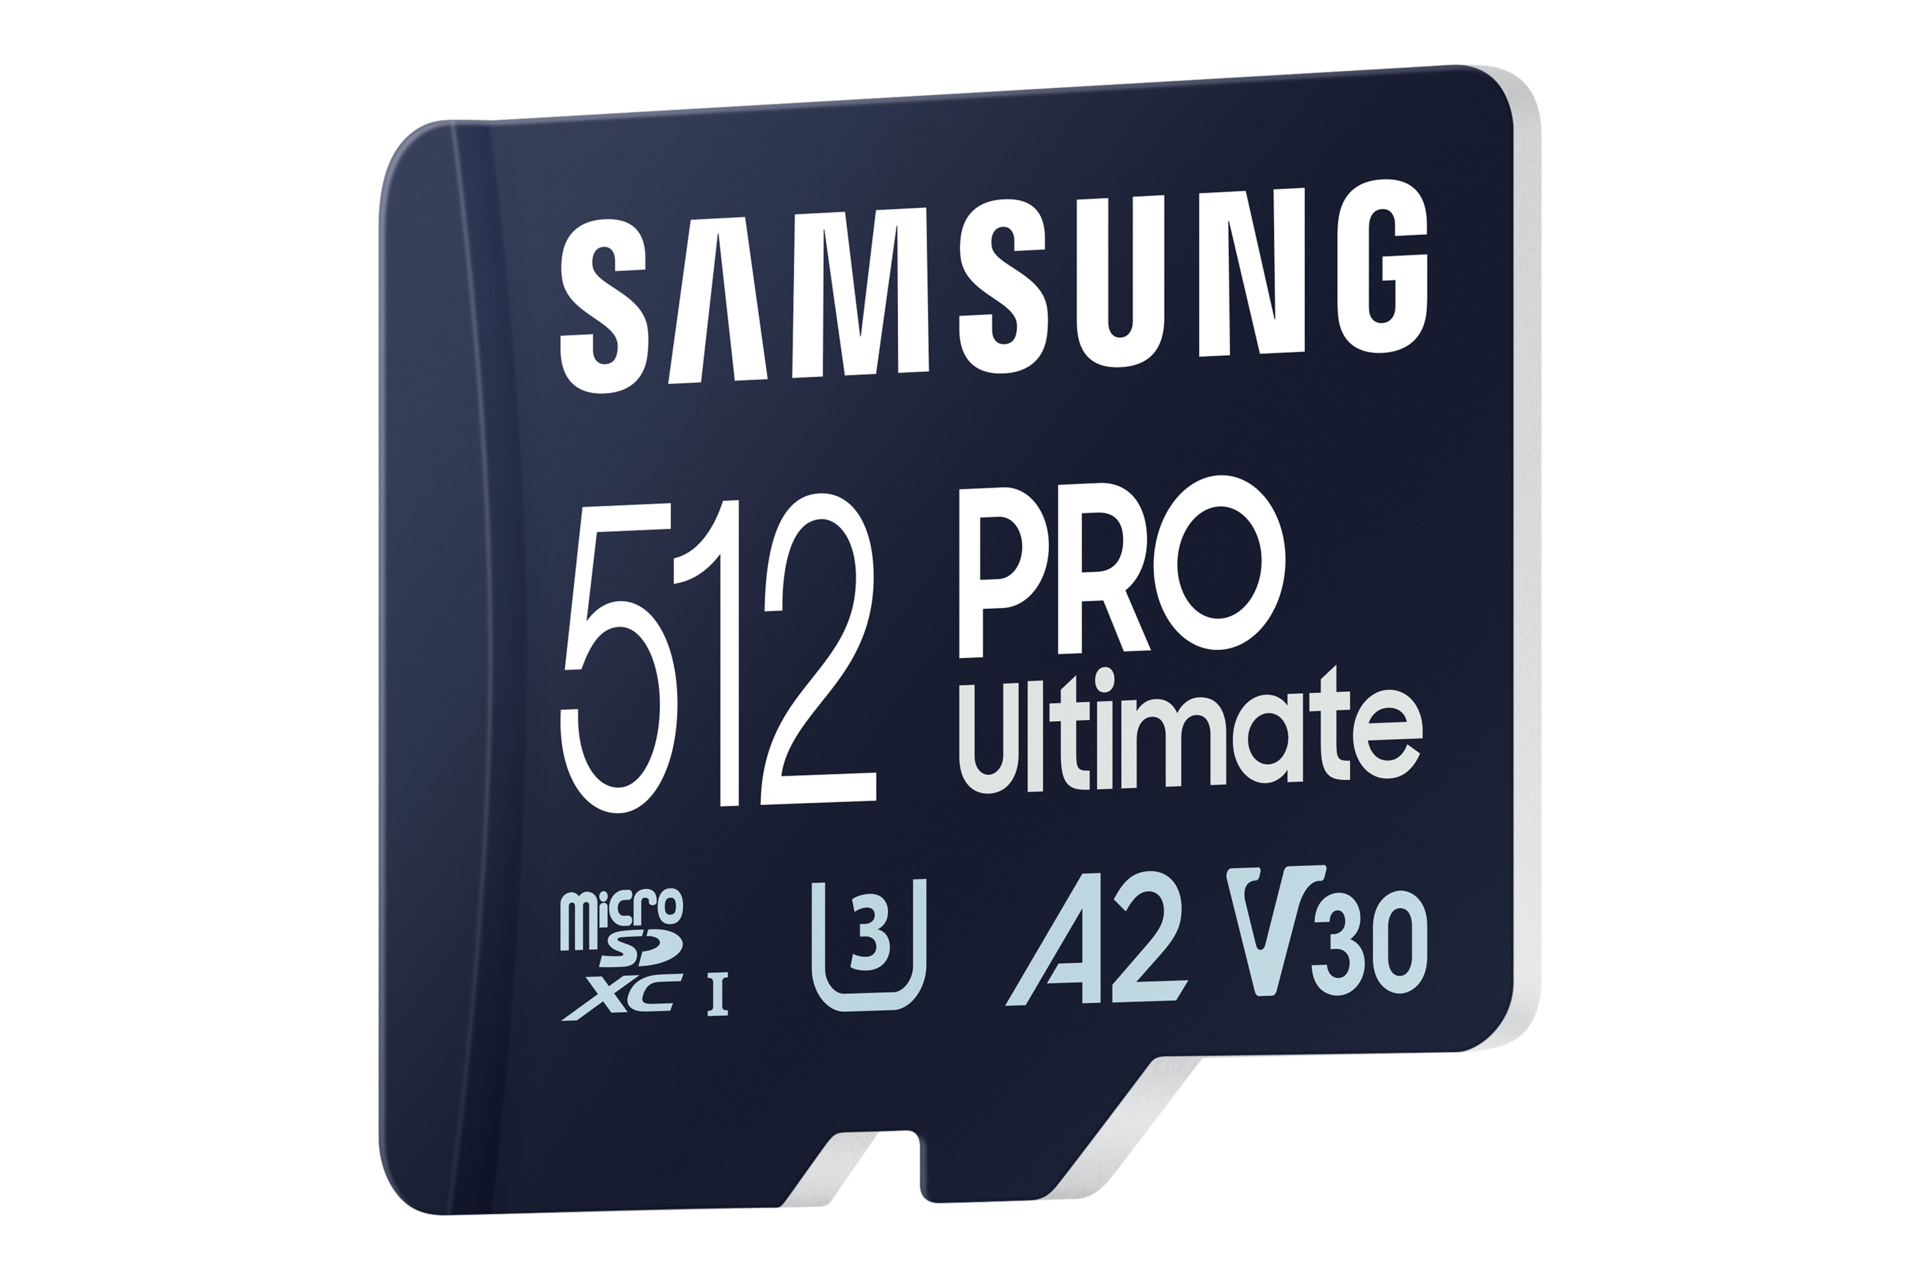 마이크로SD 메모리카드 PRO Ultimate with Card Reader 512 GB 왼쪽 뒤로 45도 기울어진 이미지